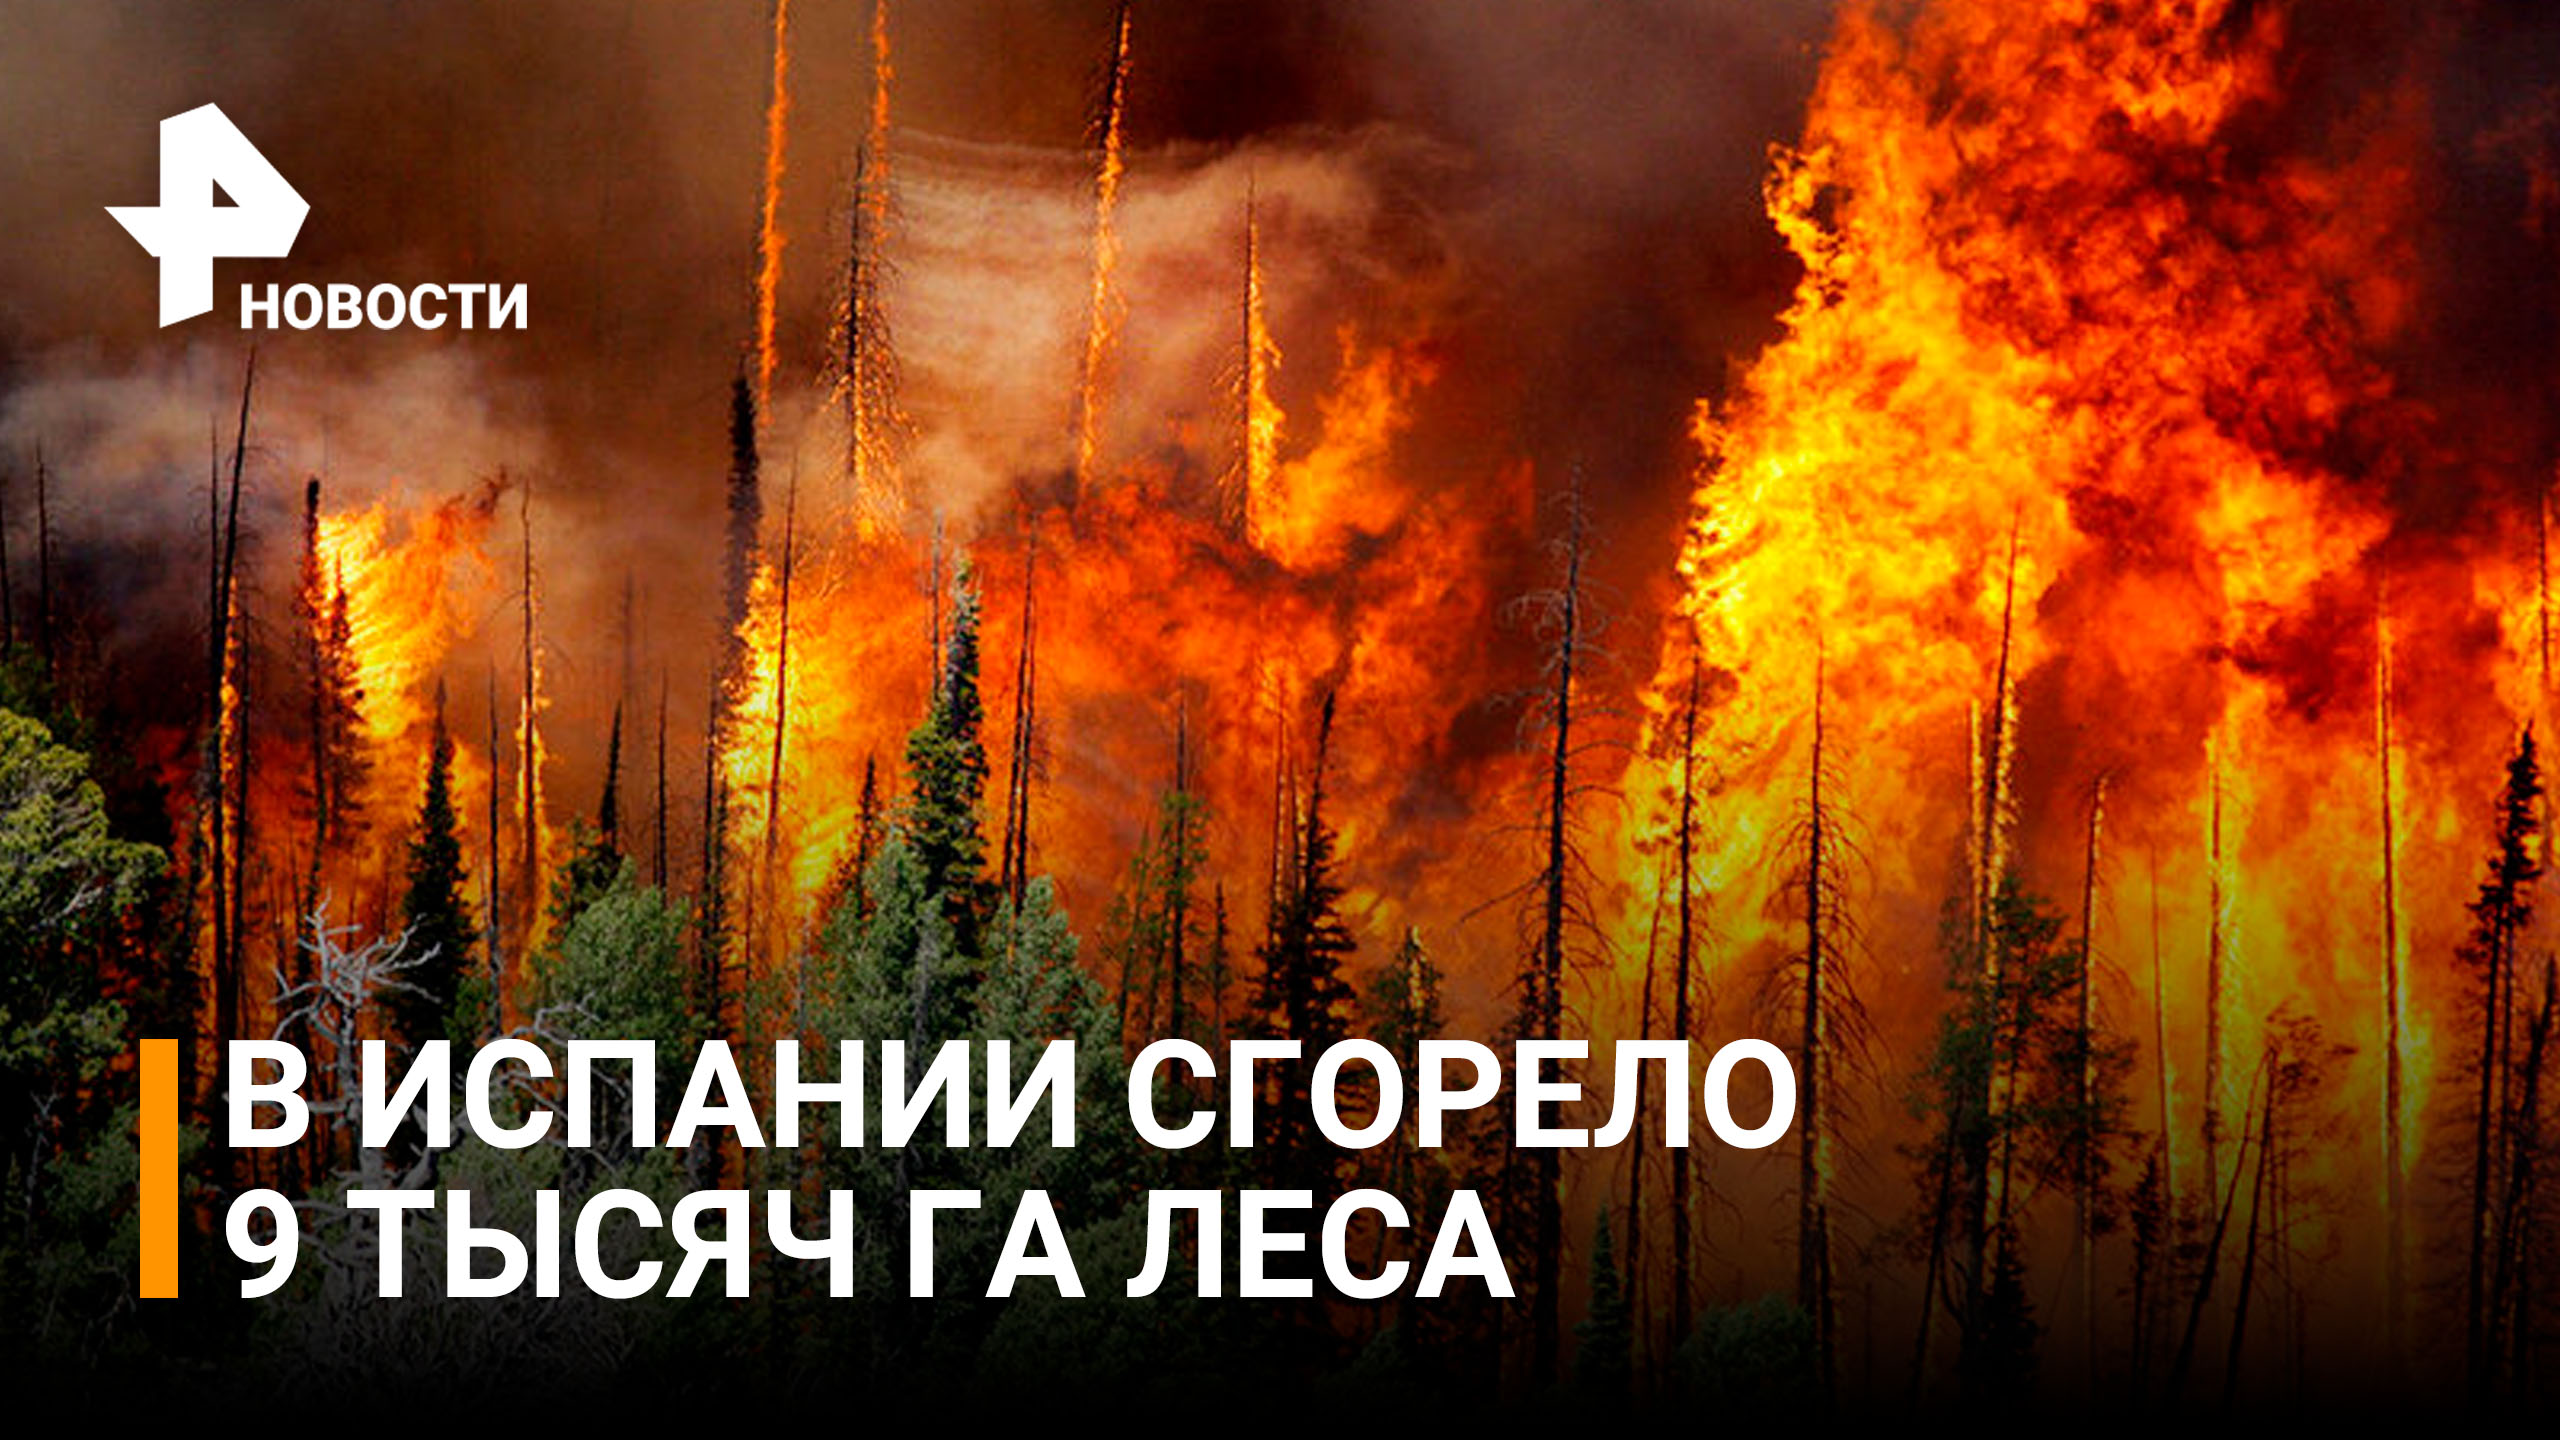 В Испании сгорело 9 тысяч га леса из-за аномальной жары / РЕН Новости